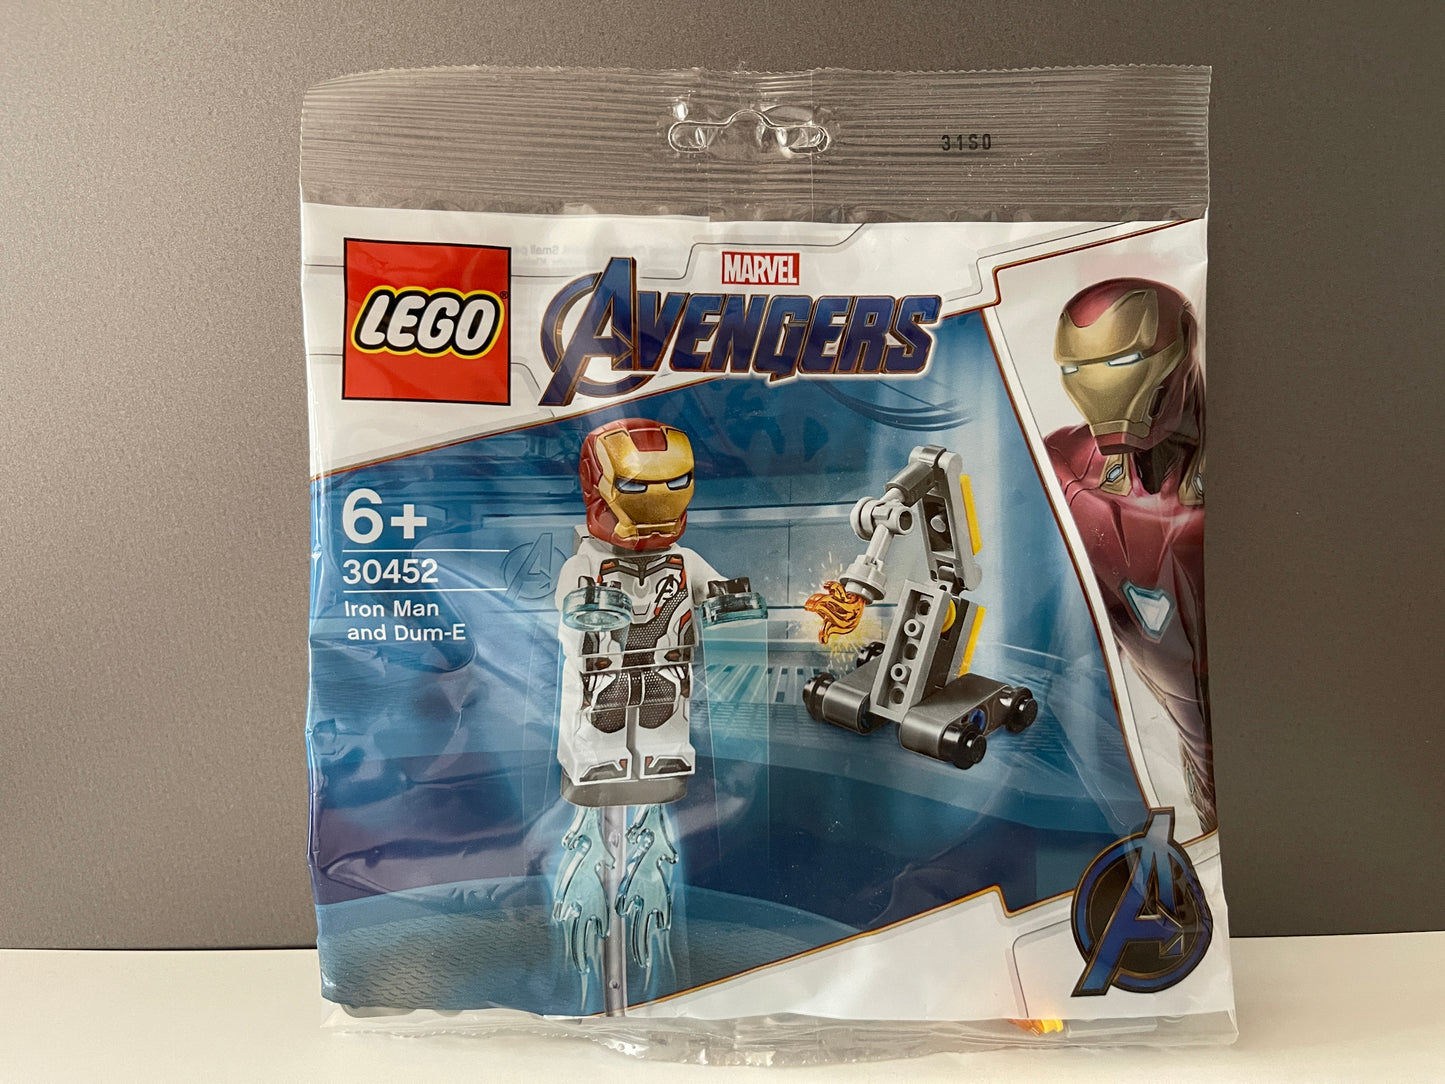 LEGO Marvel Avengers "Iron Man and Dum-E" Polybag (30452) 